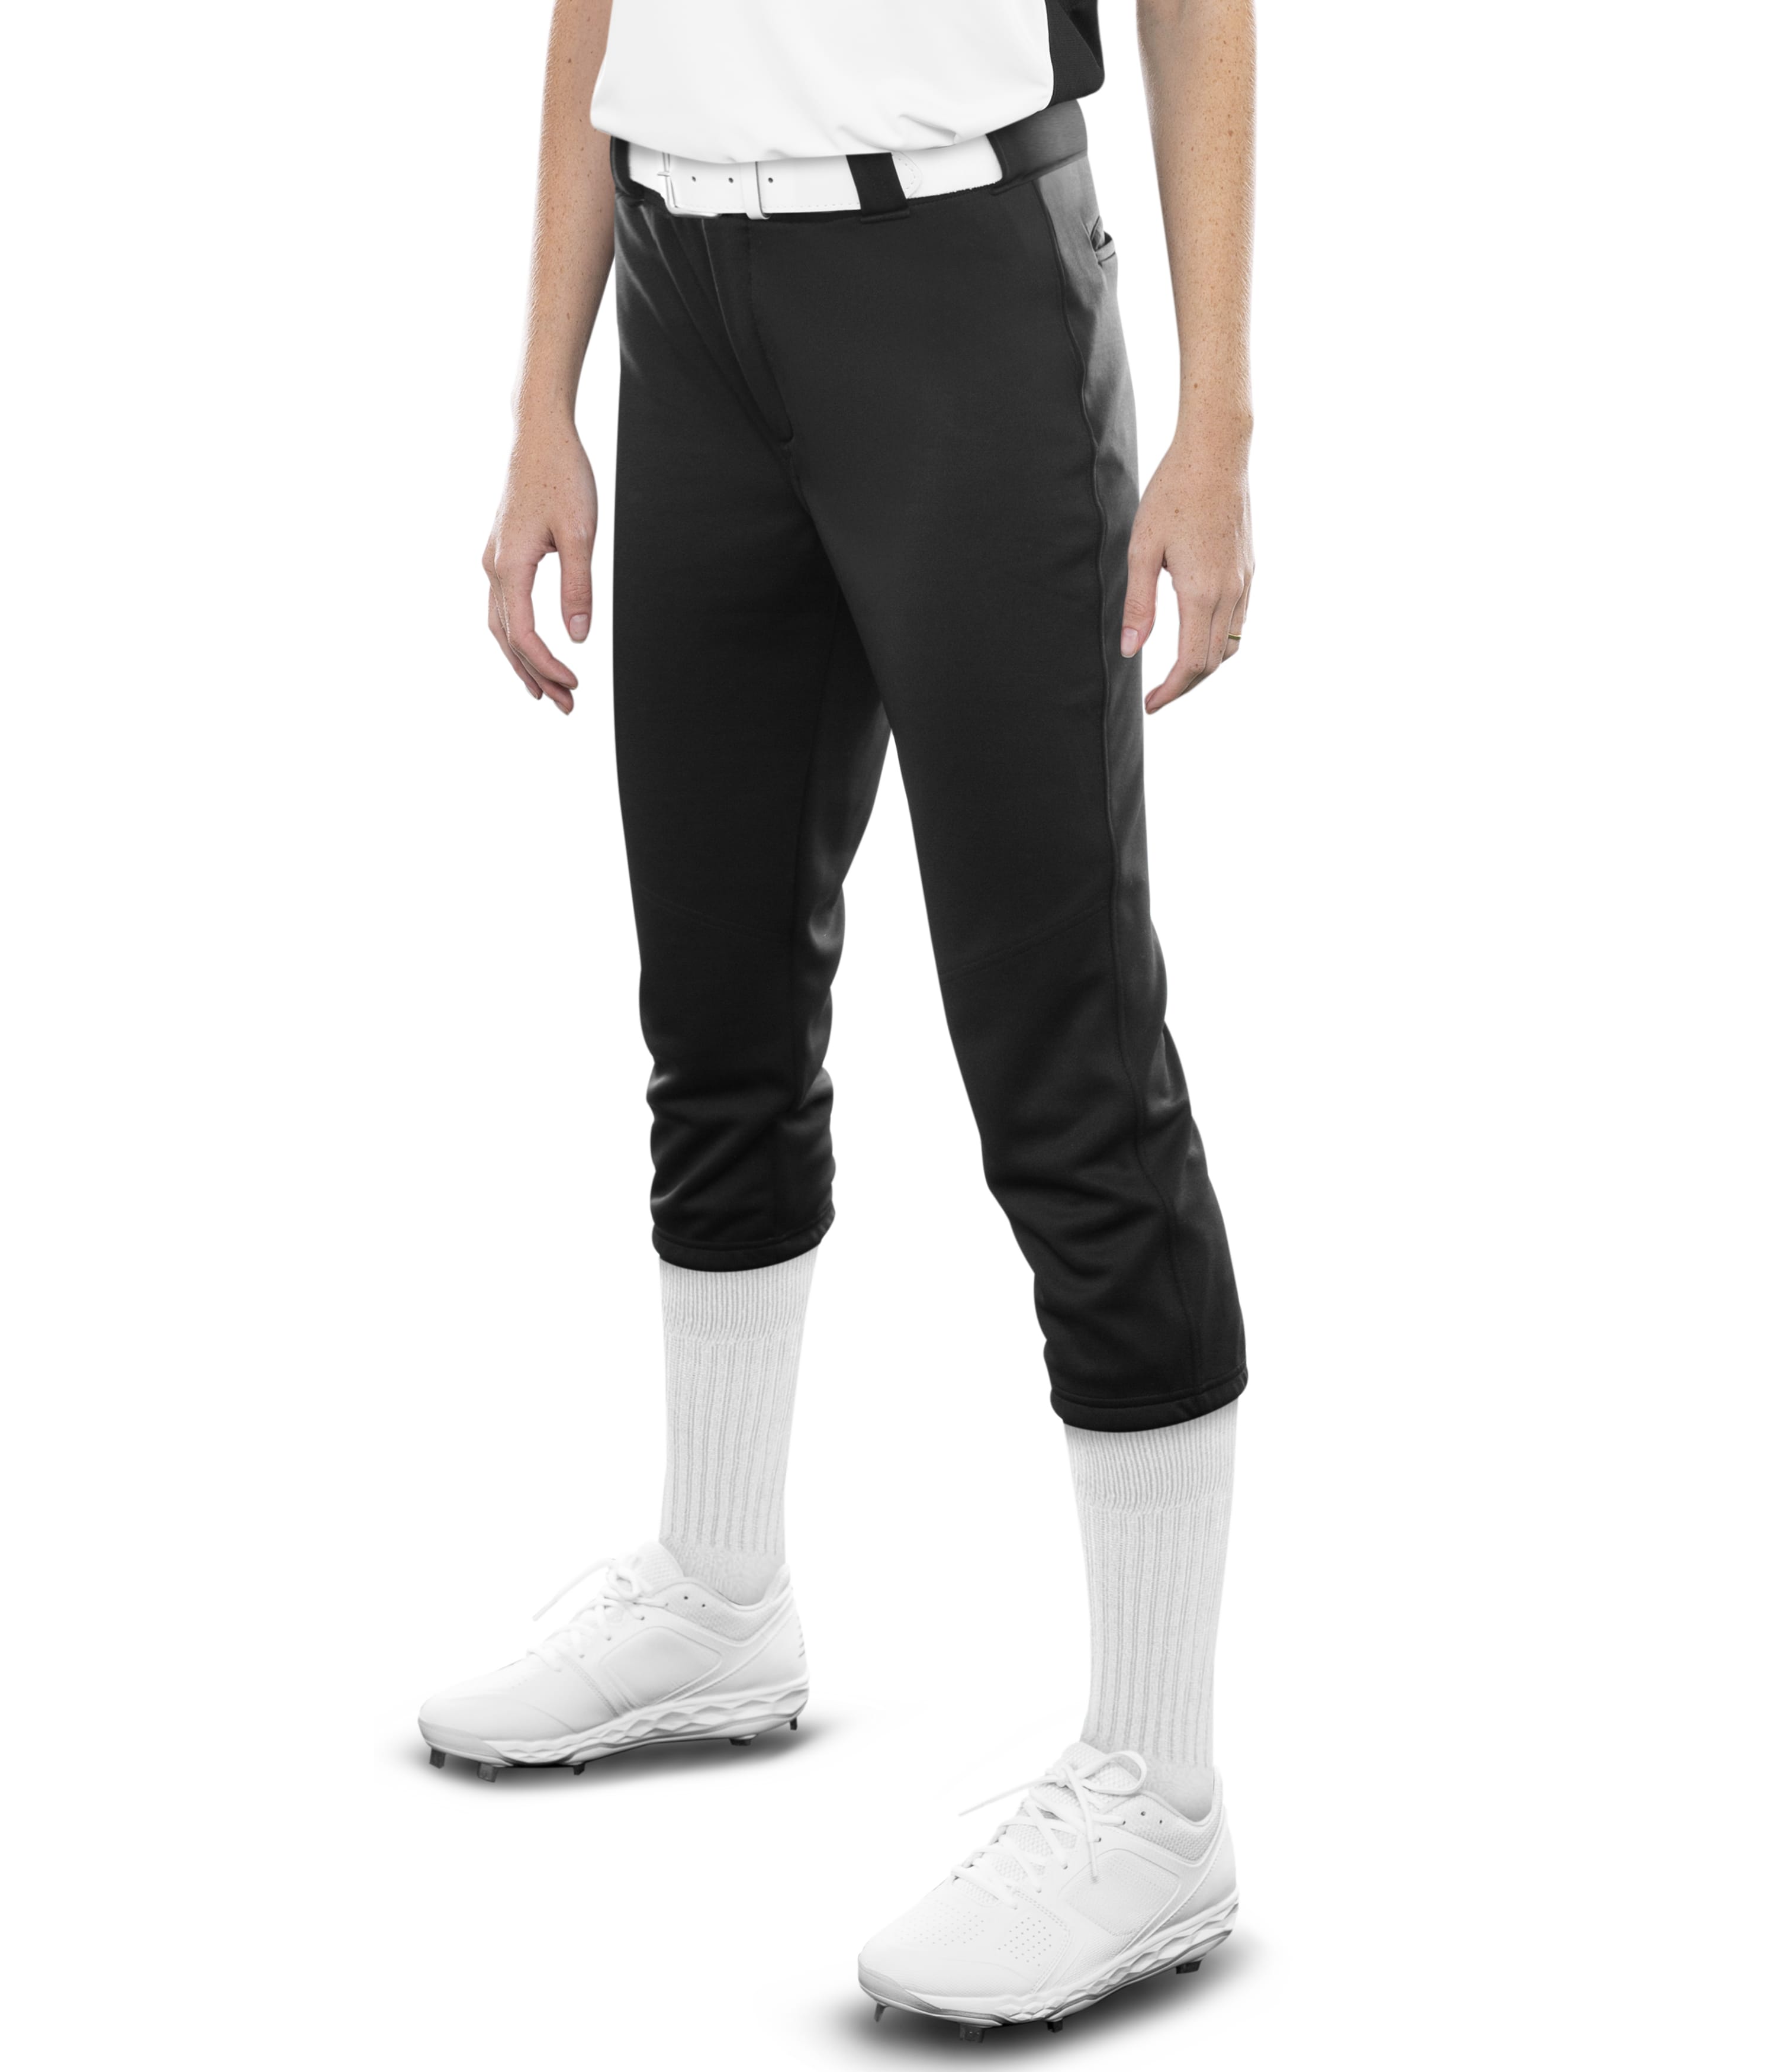 White Size 2XL Baseball & Softball Pants for Men for sale